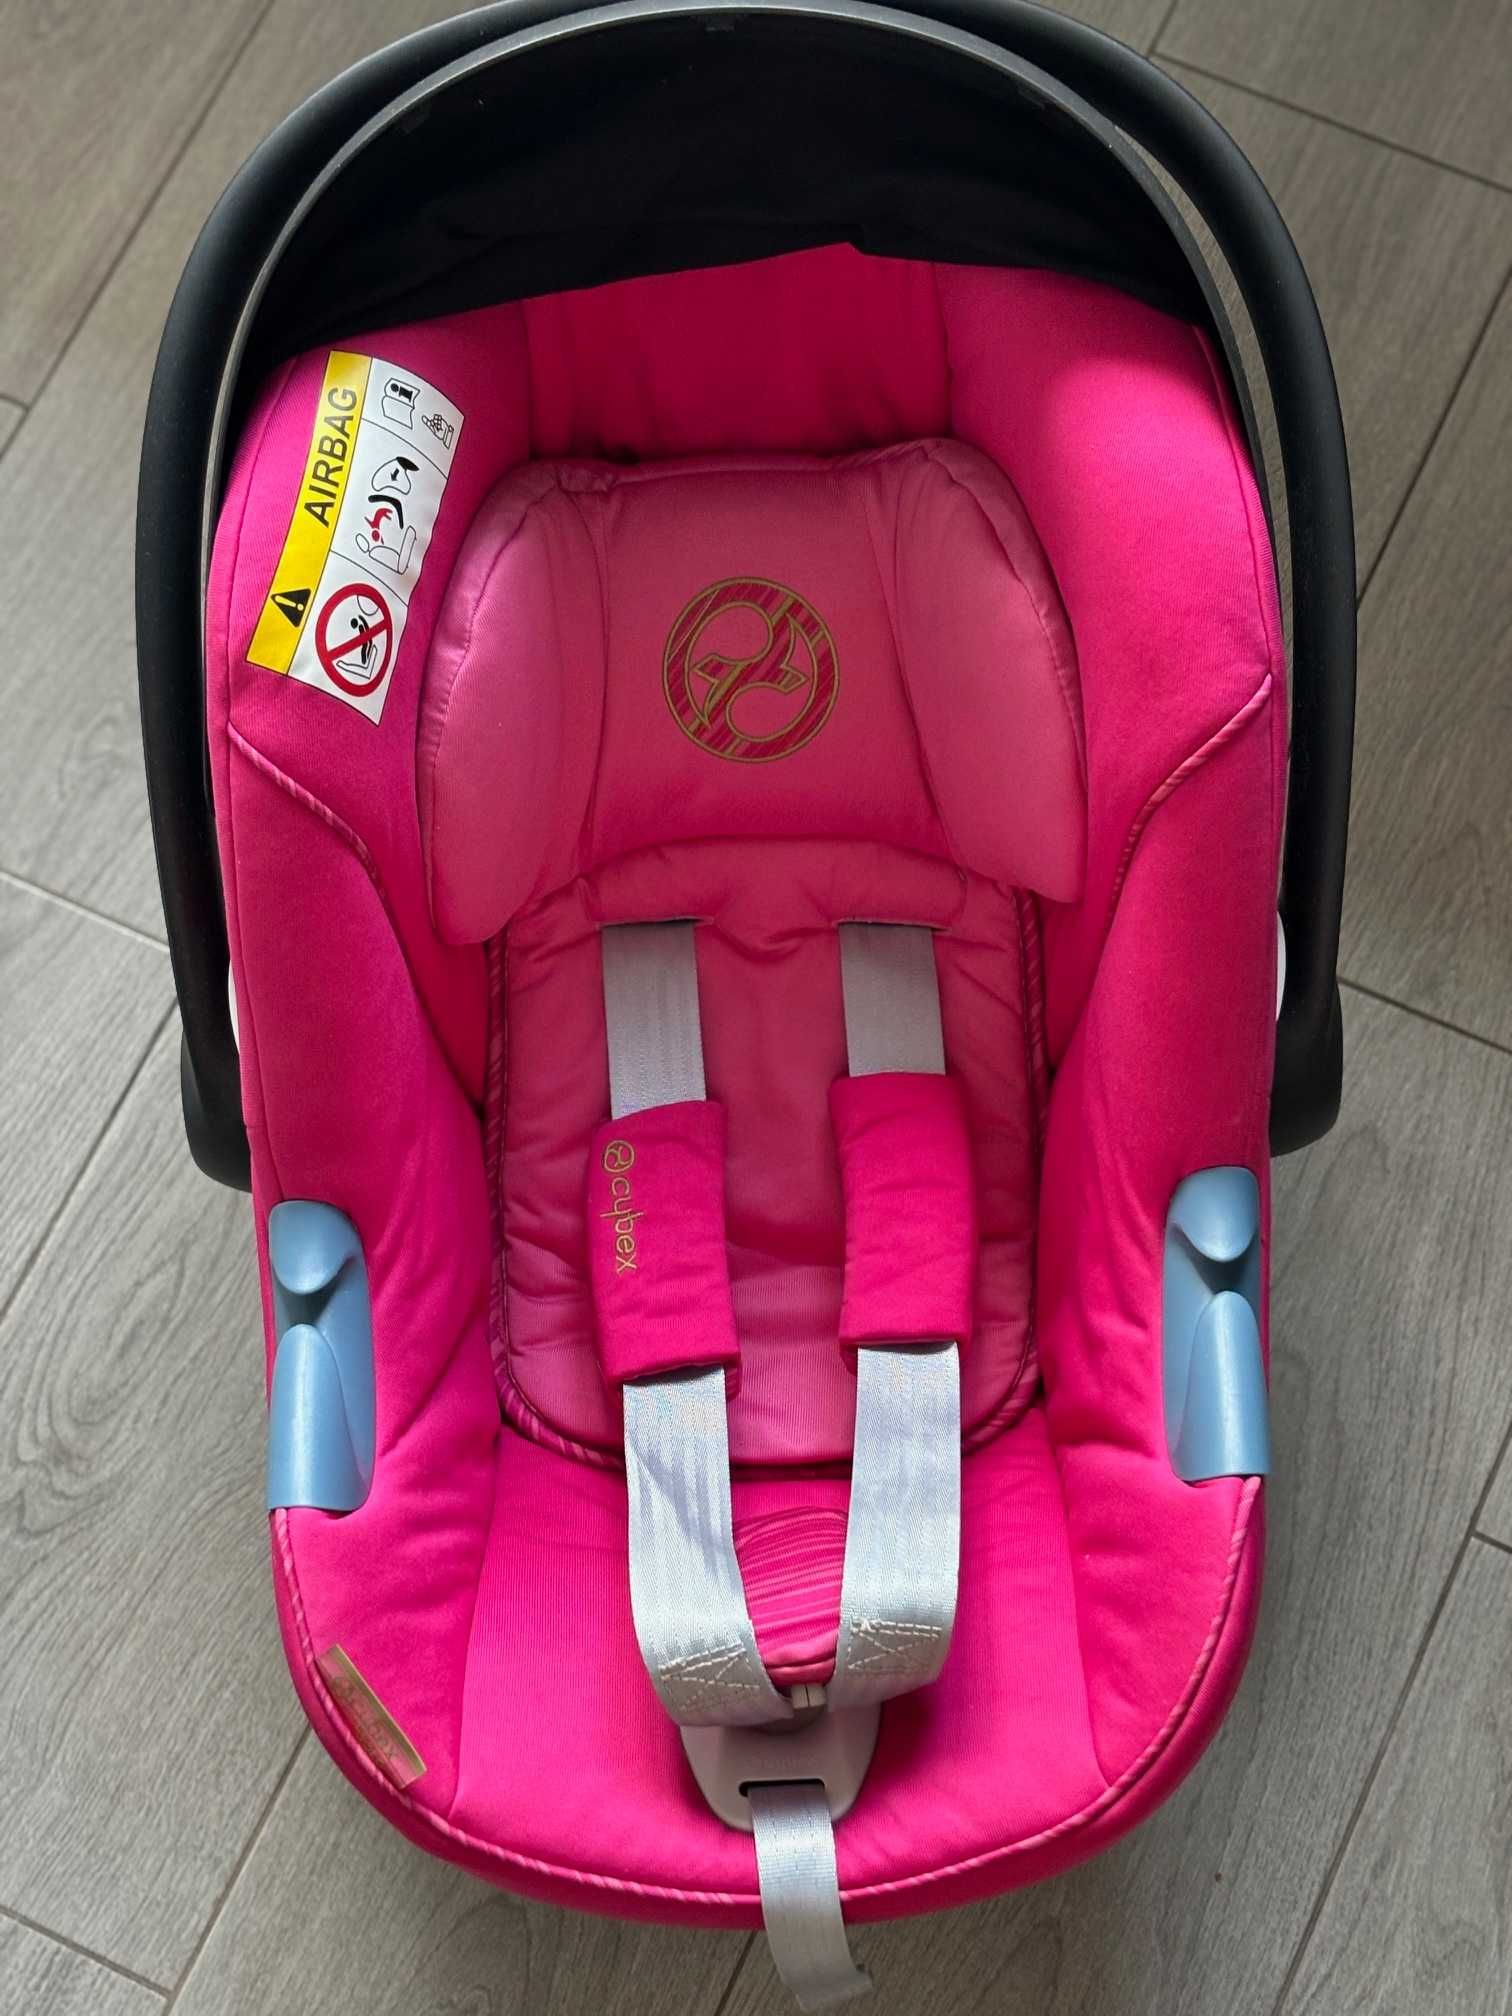 Автокрісло Cybex Aton M i-size рожеве для немовлят